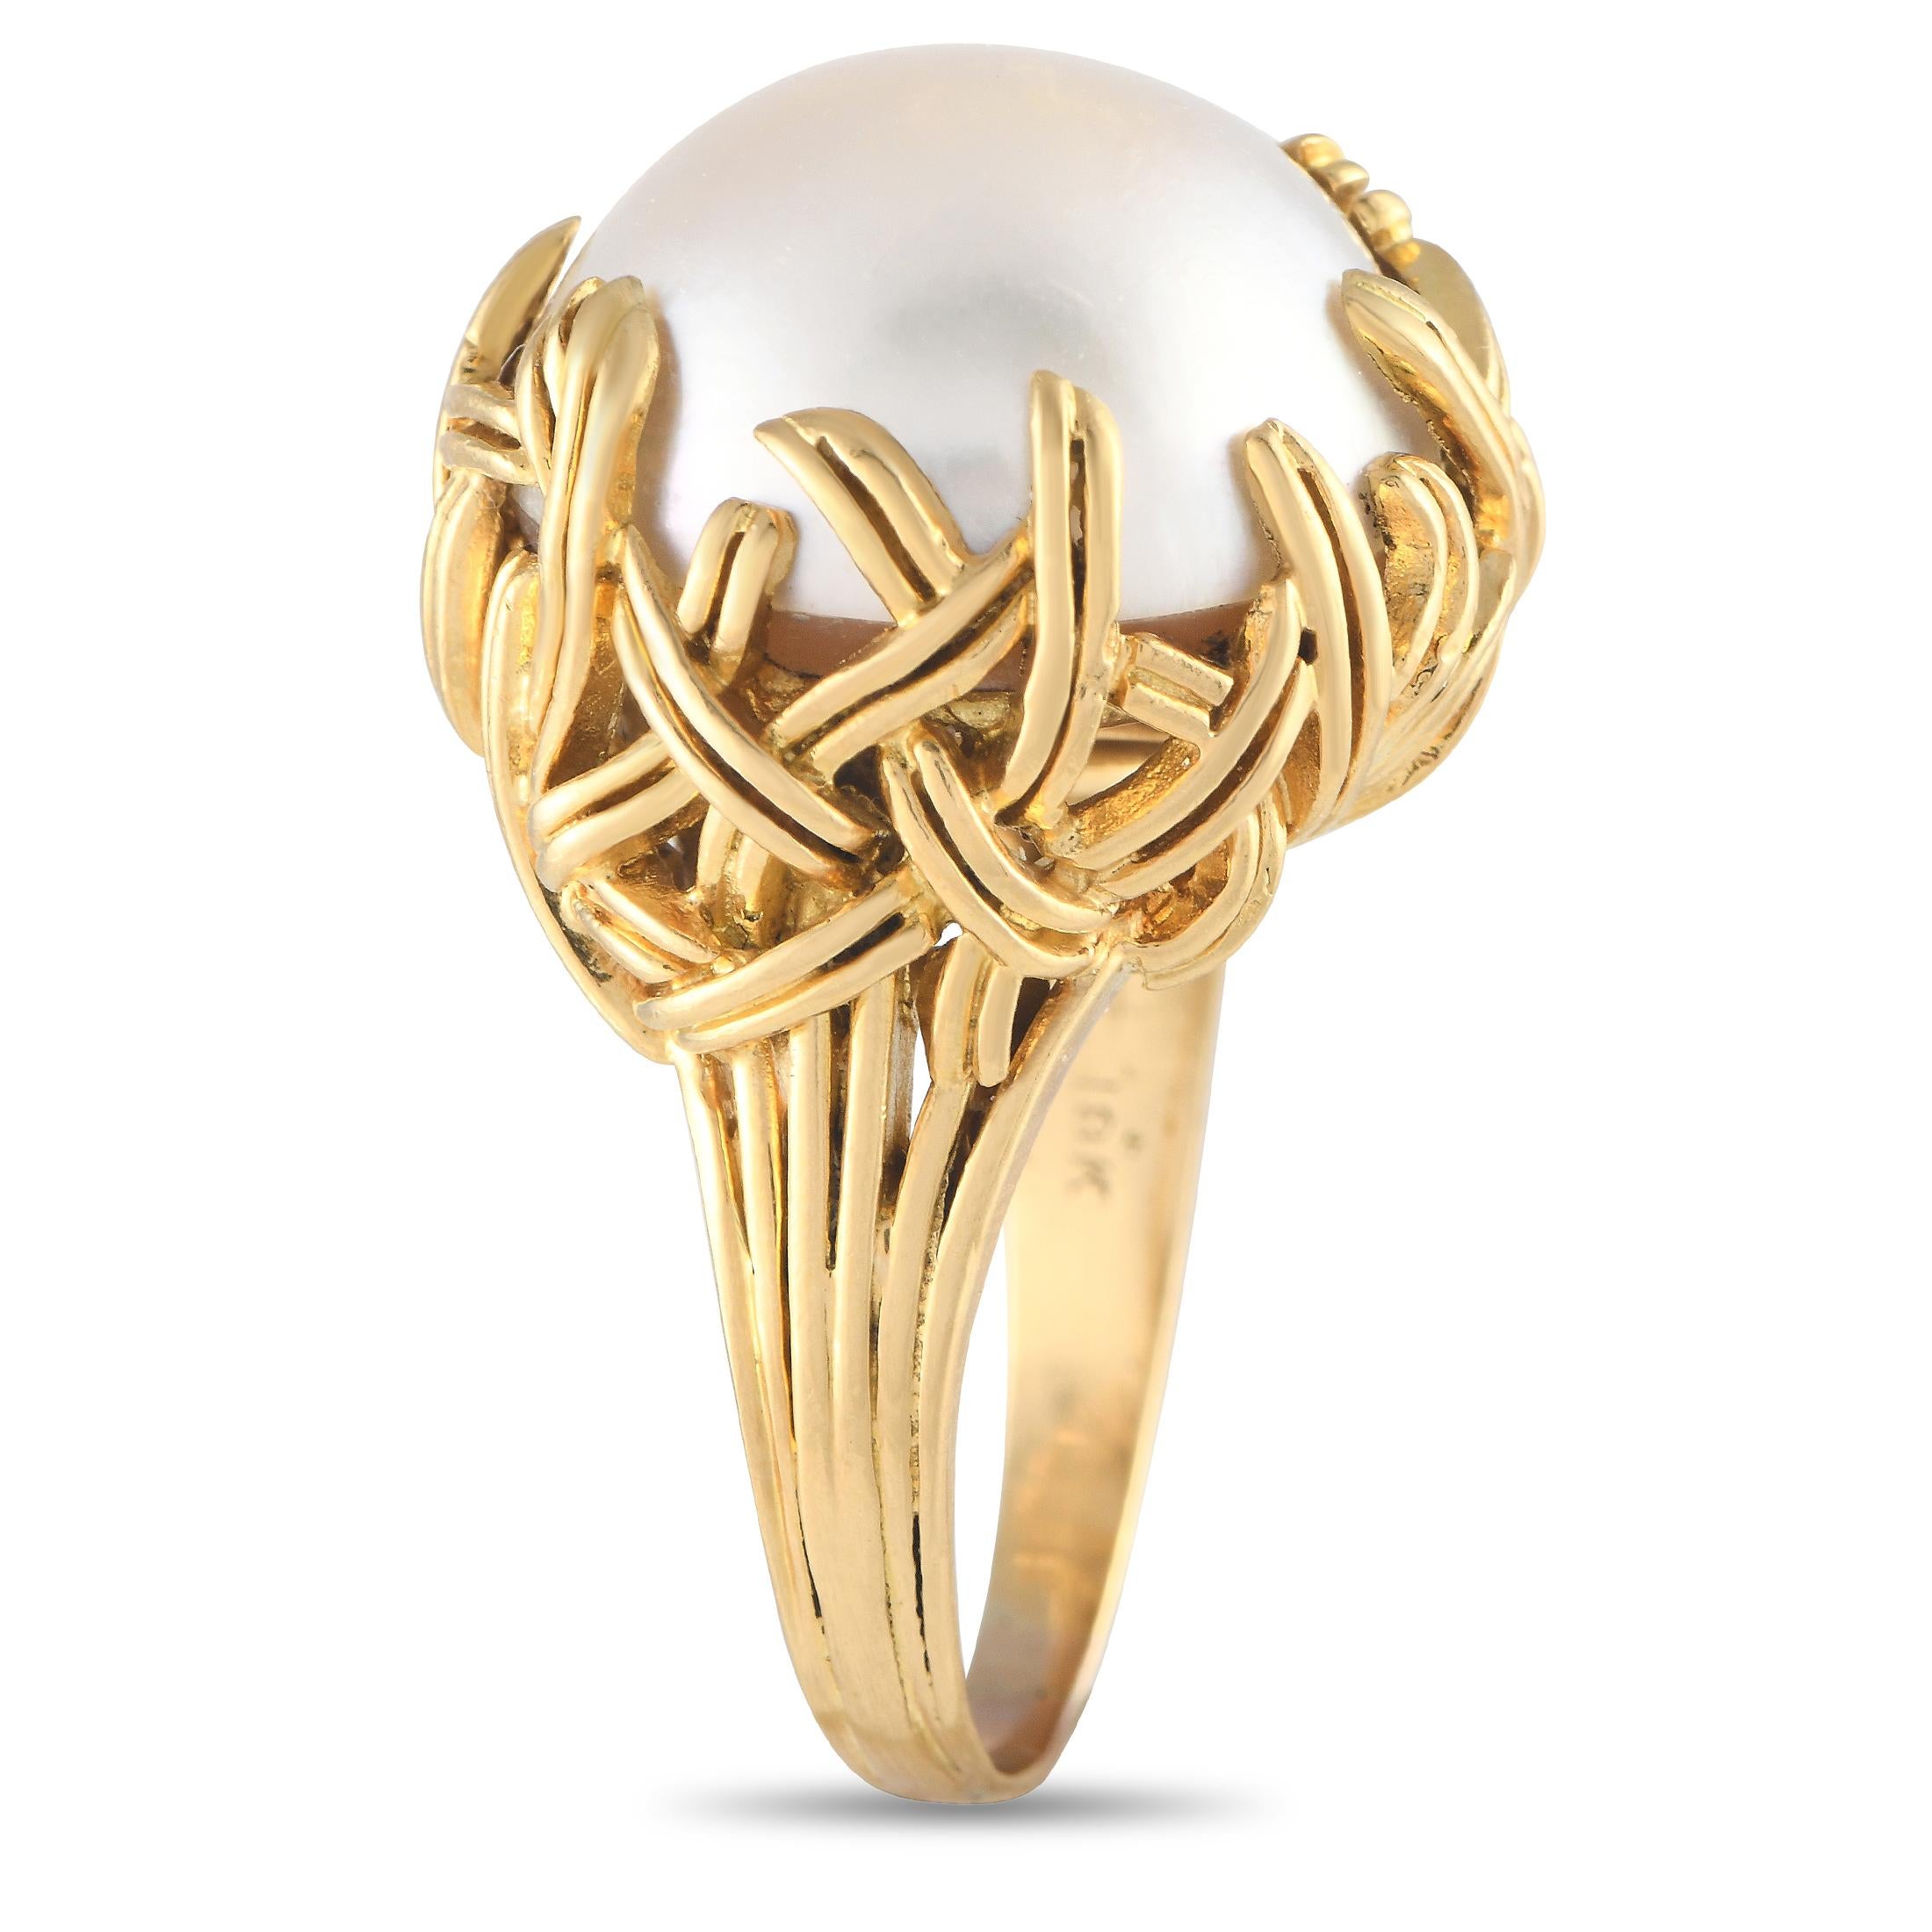 Ein wunderschönes Erbstück. Dieser Ring von Tiffany & Co. besticht durch seine wunderschöne Mab-Perle, die von einem stilisierten geflochtenen Korb aus 18-karätigem Gelbgold umhüllt ist. Die oberen Abmessungen des Rings betragen 17 mm x 19 mm.